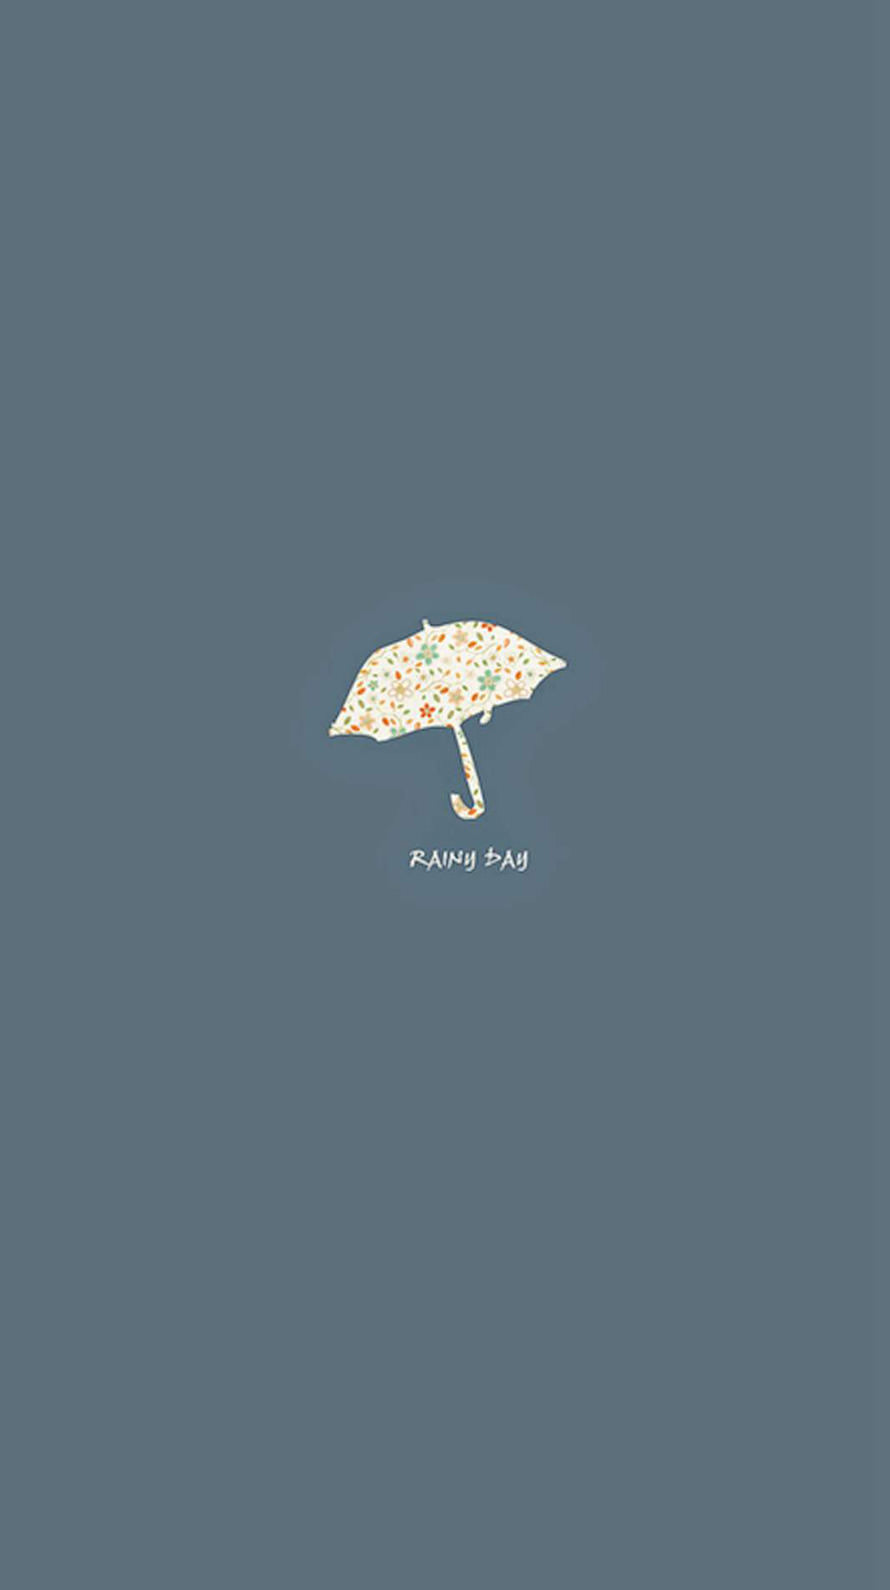 雨の日 Rainy Day iPhone6壁紙